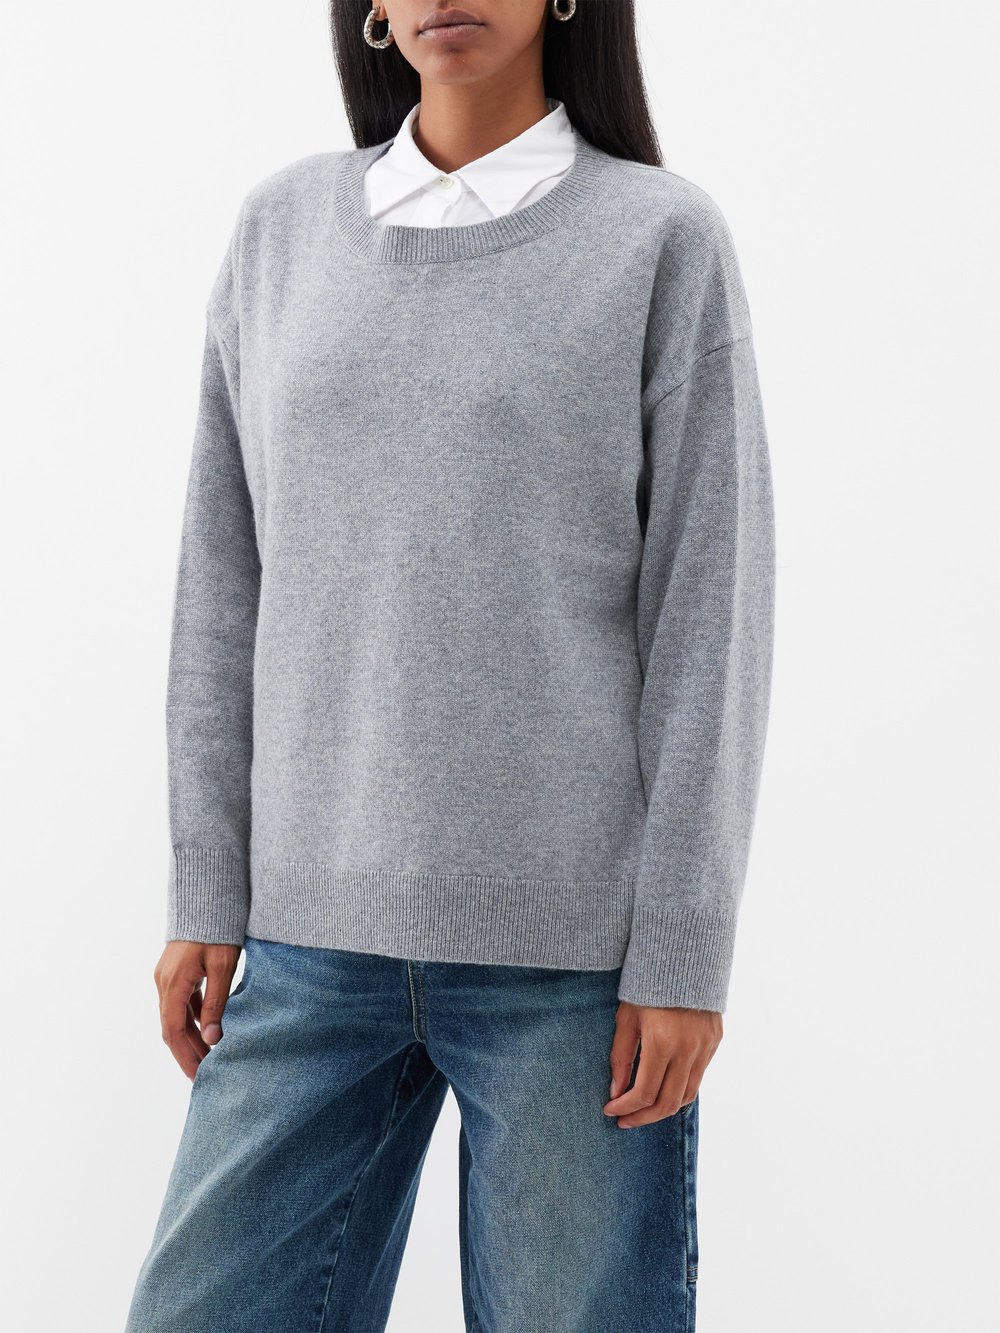 Кашемировый свитер nebelo с длинными рукавами Nili Lotan, серый джинсы широкого кроя emerson nili lotan синий